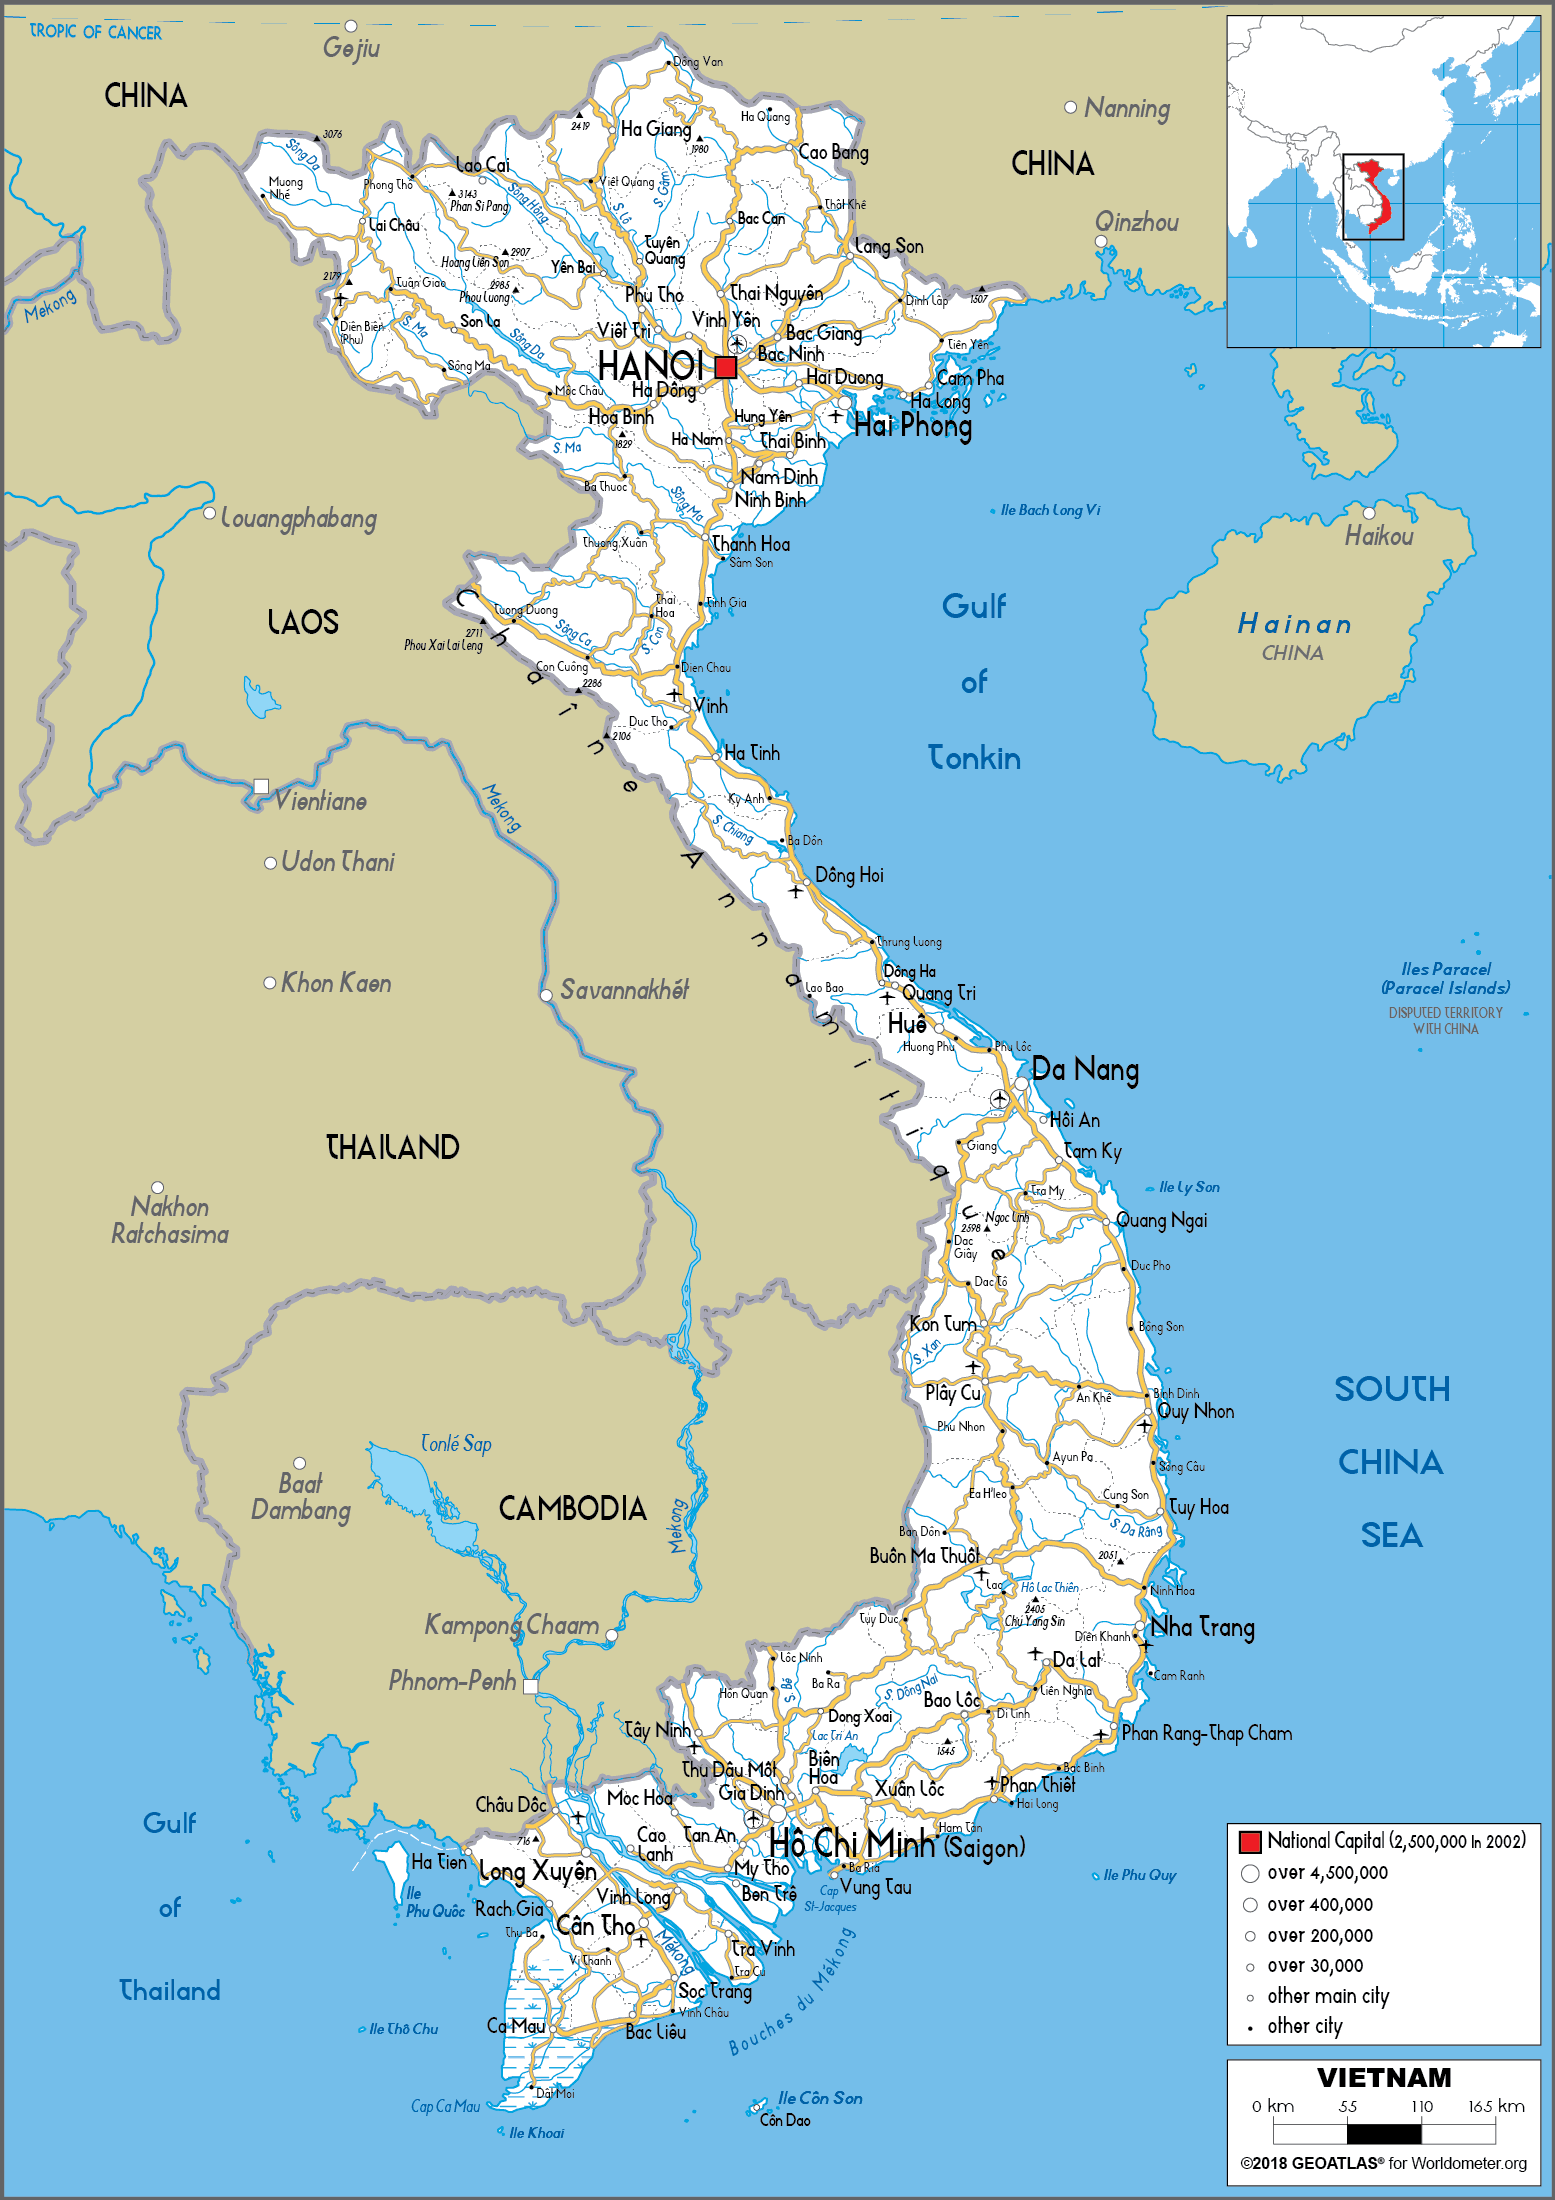 bản đồ hành chính các tỉnh việt nam khổ lớn năm 2022 firstreal com vn